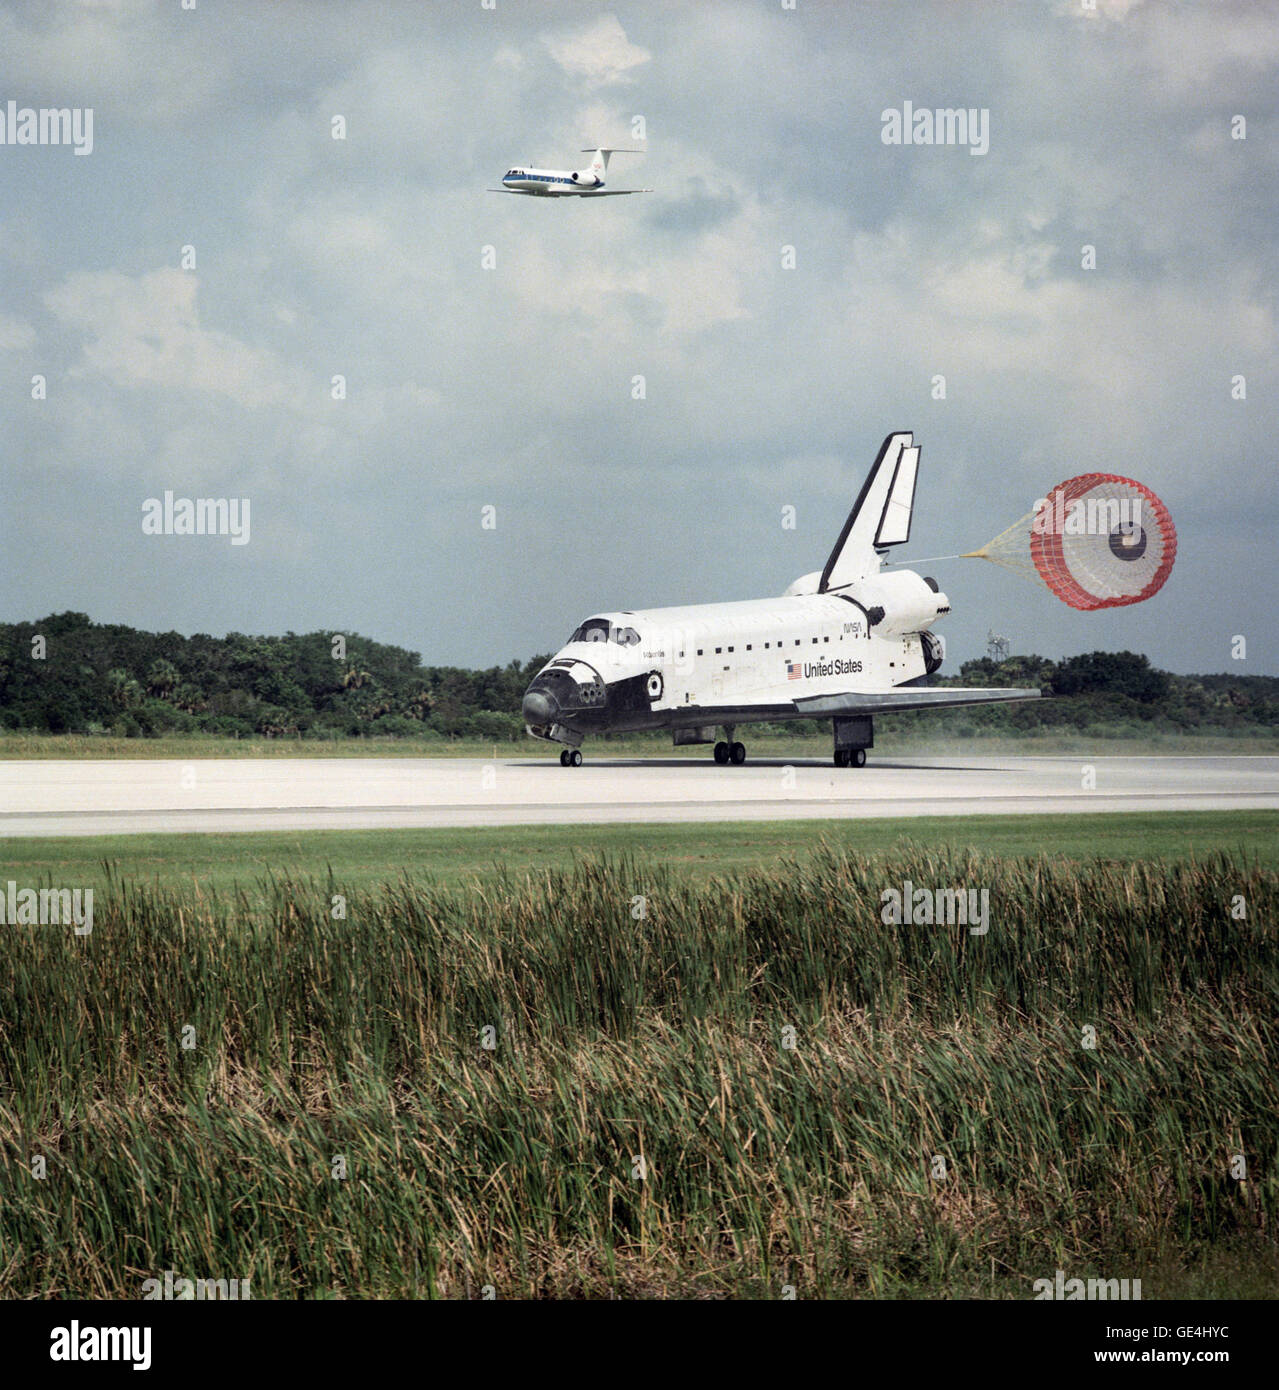 Space Shuttle Atlantis STS-71 Mission landet am Kennedy Space Center am 7. Juli 1995. STS-71 war der erste Shuttle-Mission an der russischen Raumstation Mir andocken.  Bild-Nr.: sts071-s-070 Datum: 7. Juli 1995 Stockfoto